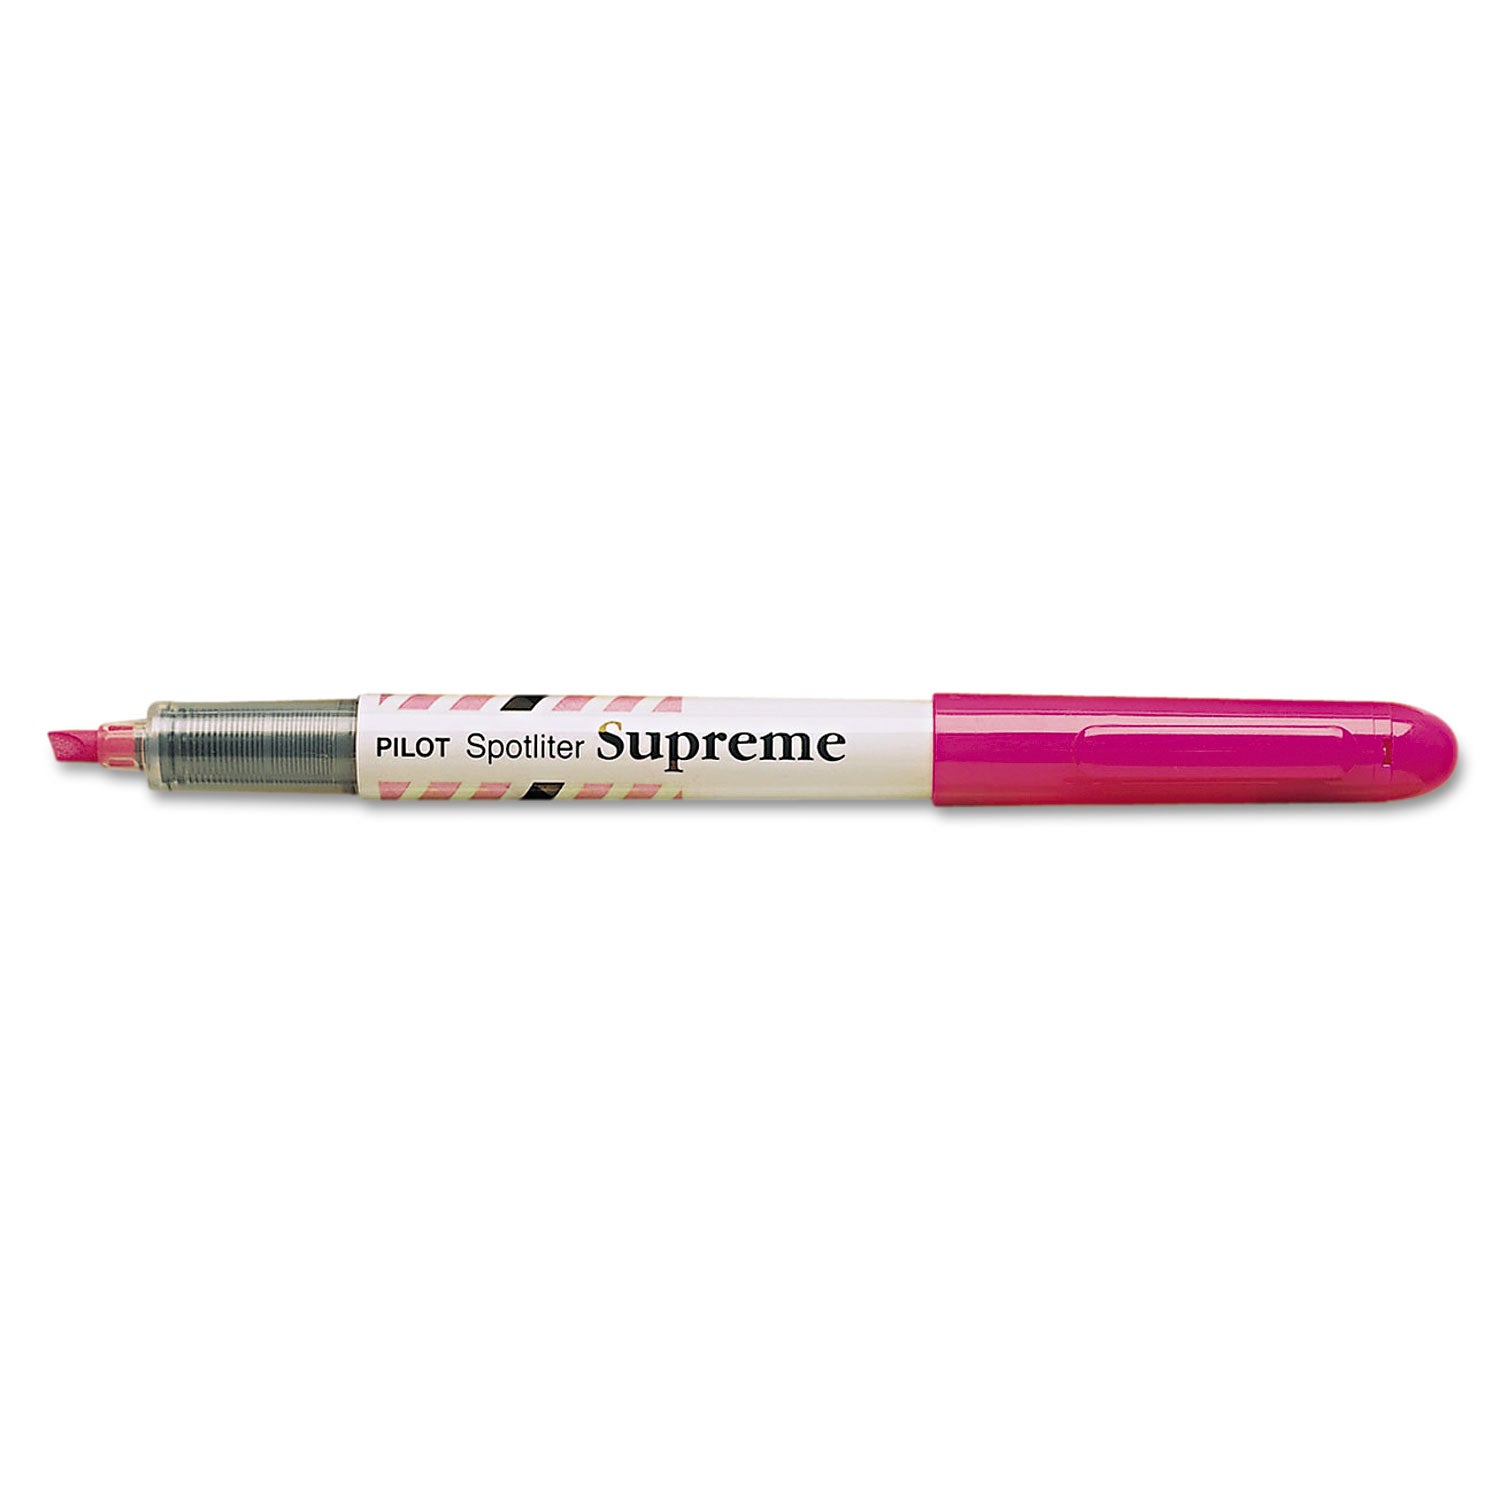 Spotliter Supreme Highlighter, Fluorescent Pink Ink, Chisel Tip, Pink/White Barrel - 